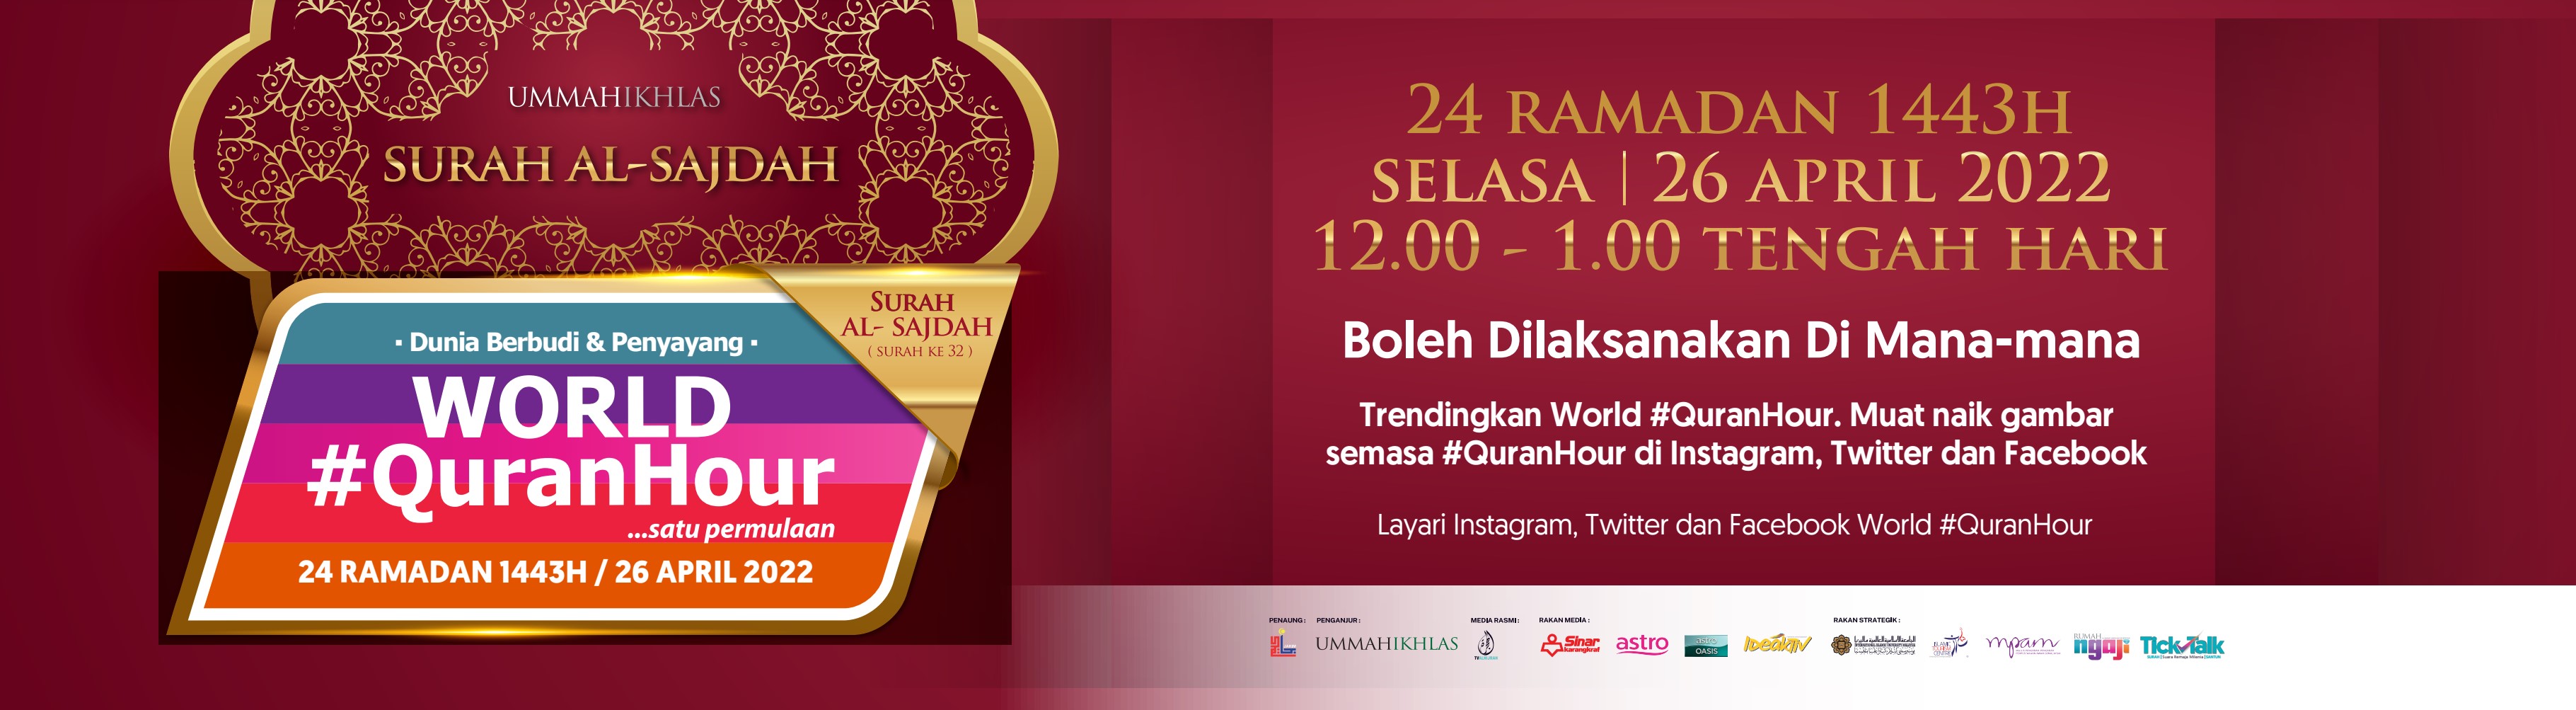 Kempen World Quran Hour Pada 26 April 2022